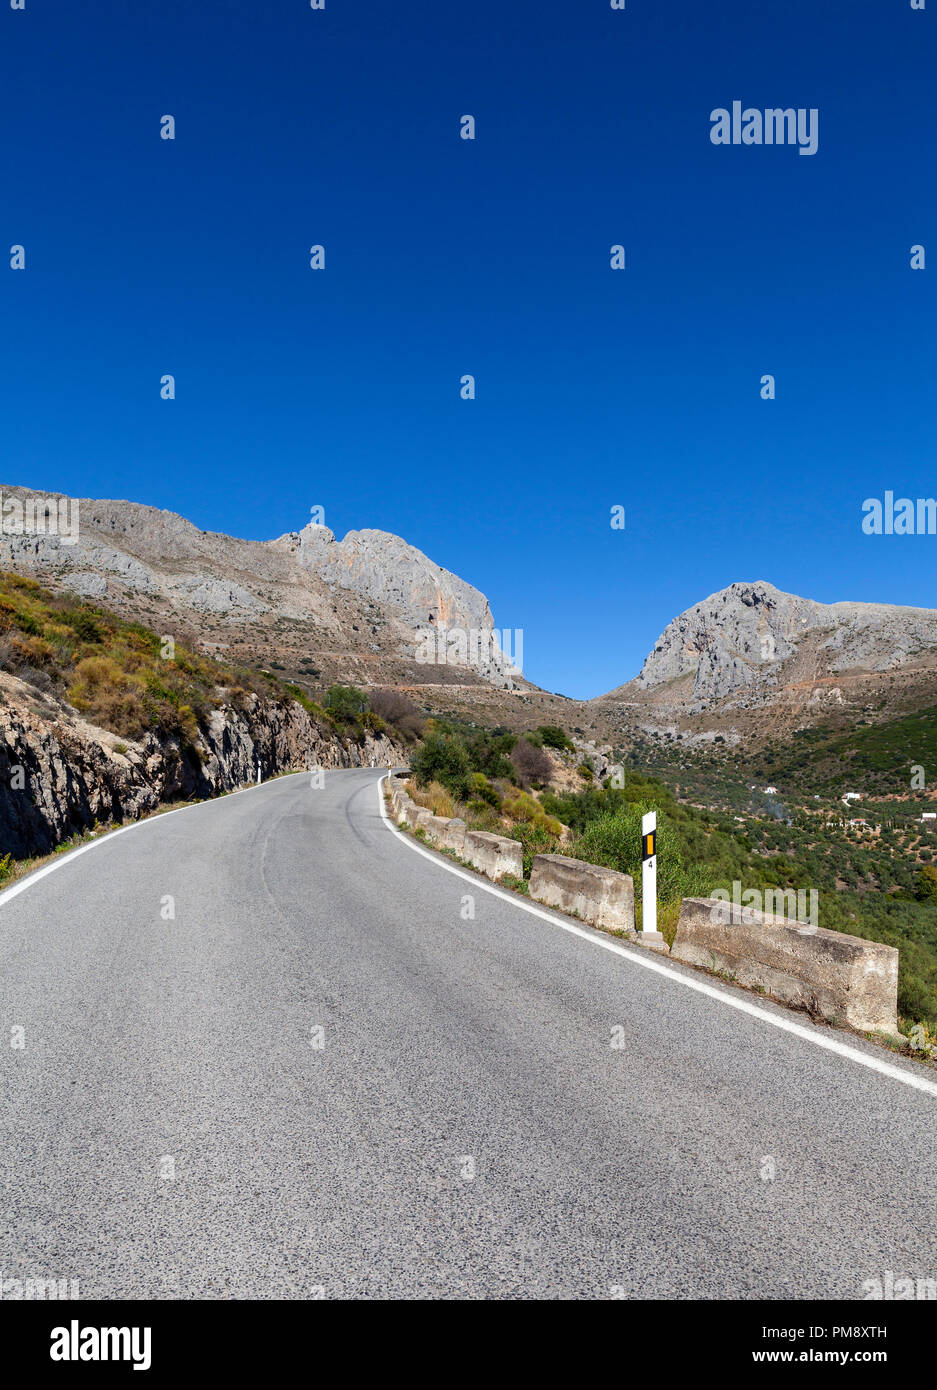 Der A-335 Straße nach El Boquete de Zafarraya, ein Berg der Cordillera Penibética, Sierra de Alhama, Andalusien, Spanien Stockfoto